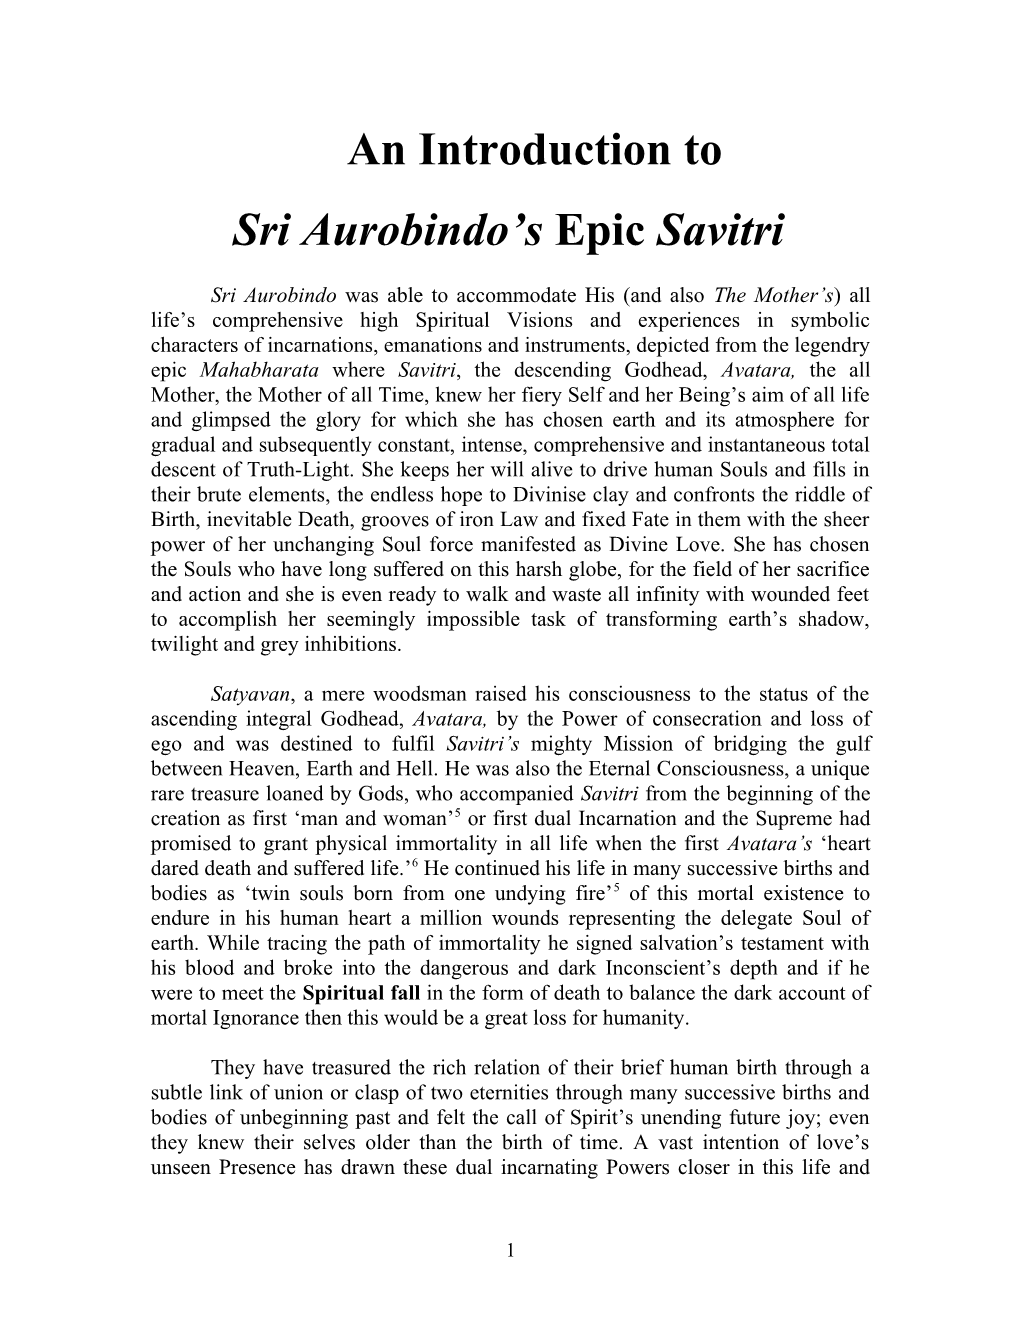 Sri Aurobindo S Epic Savitri